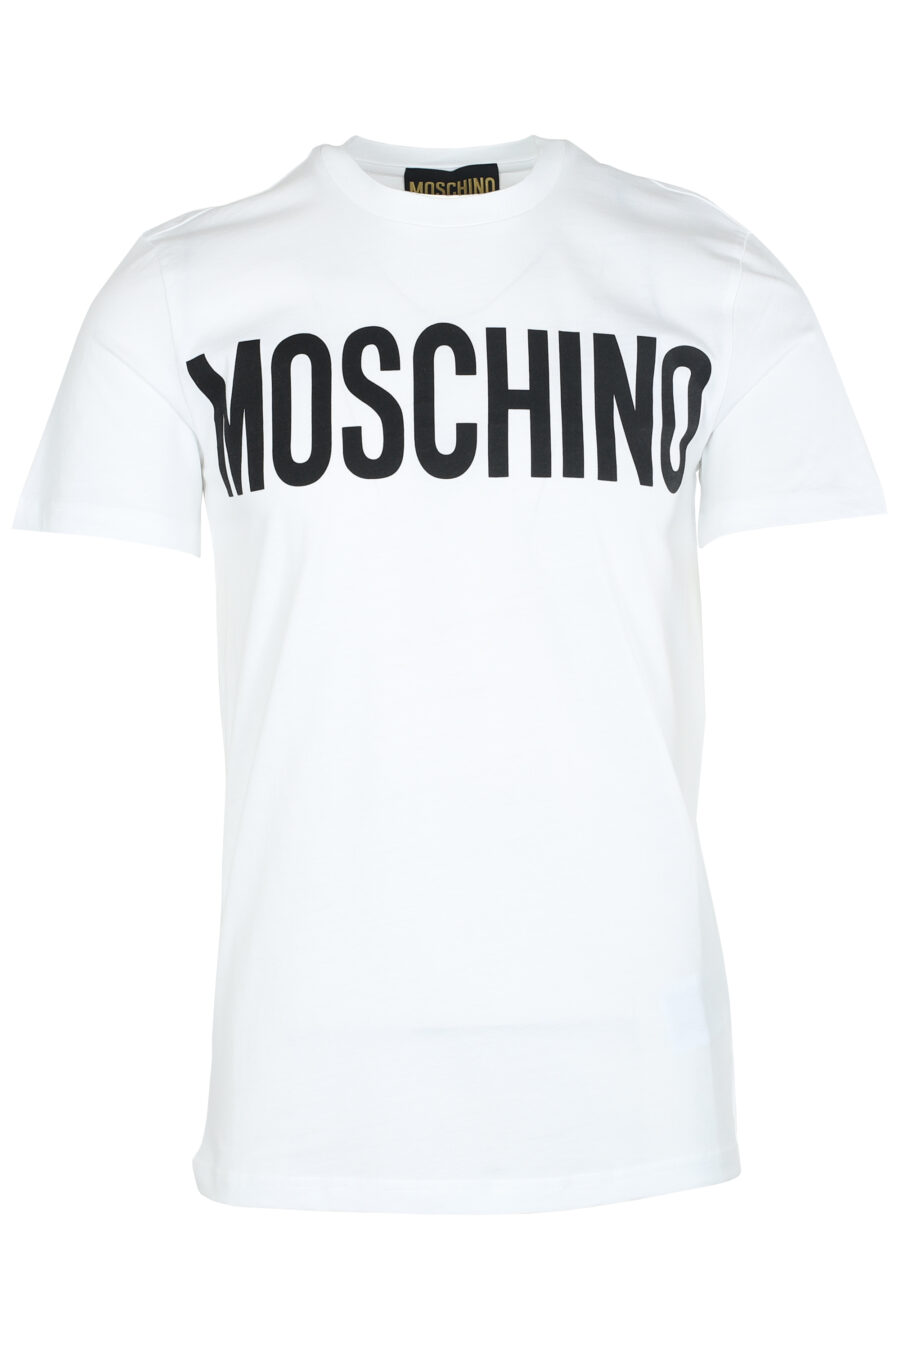 Weißes T-Shirt mit schwarzem Maxilogo - IMG 6172